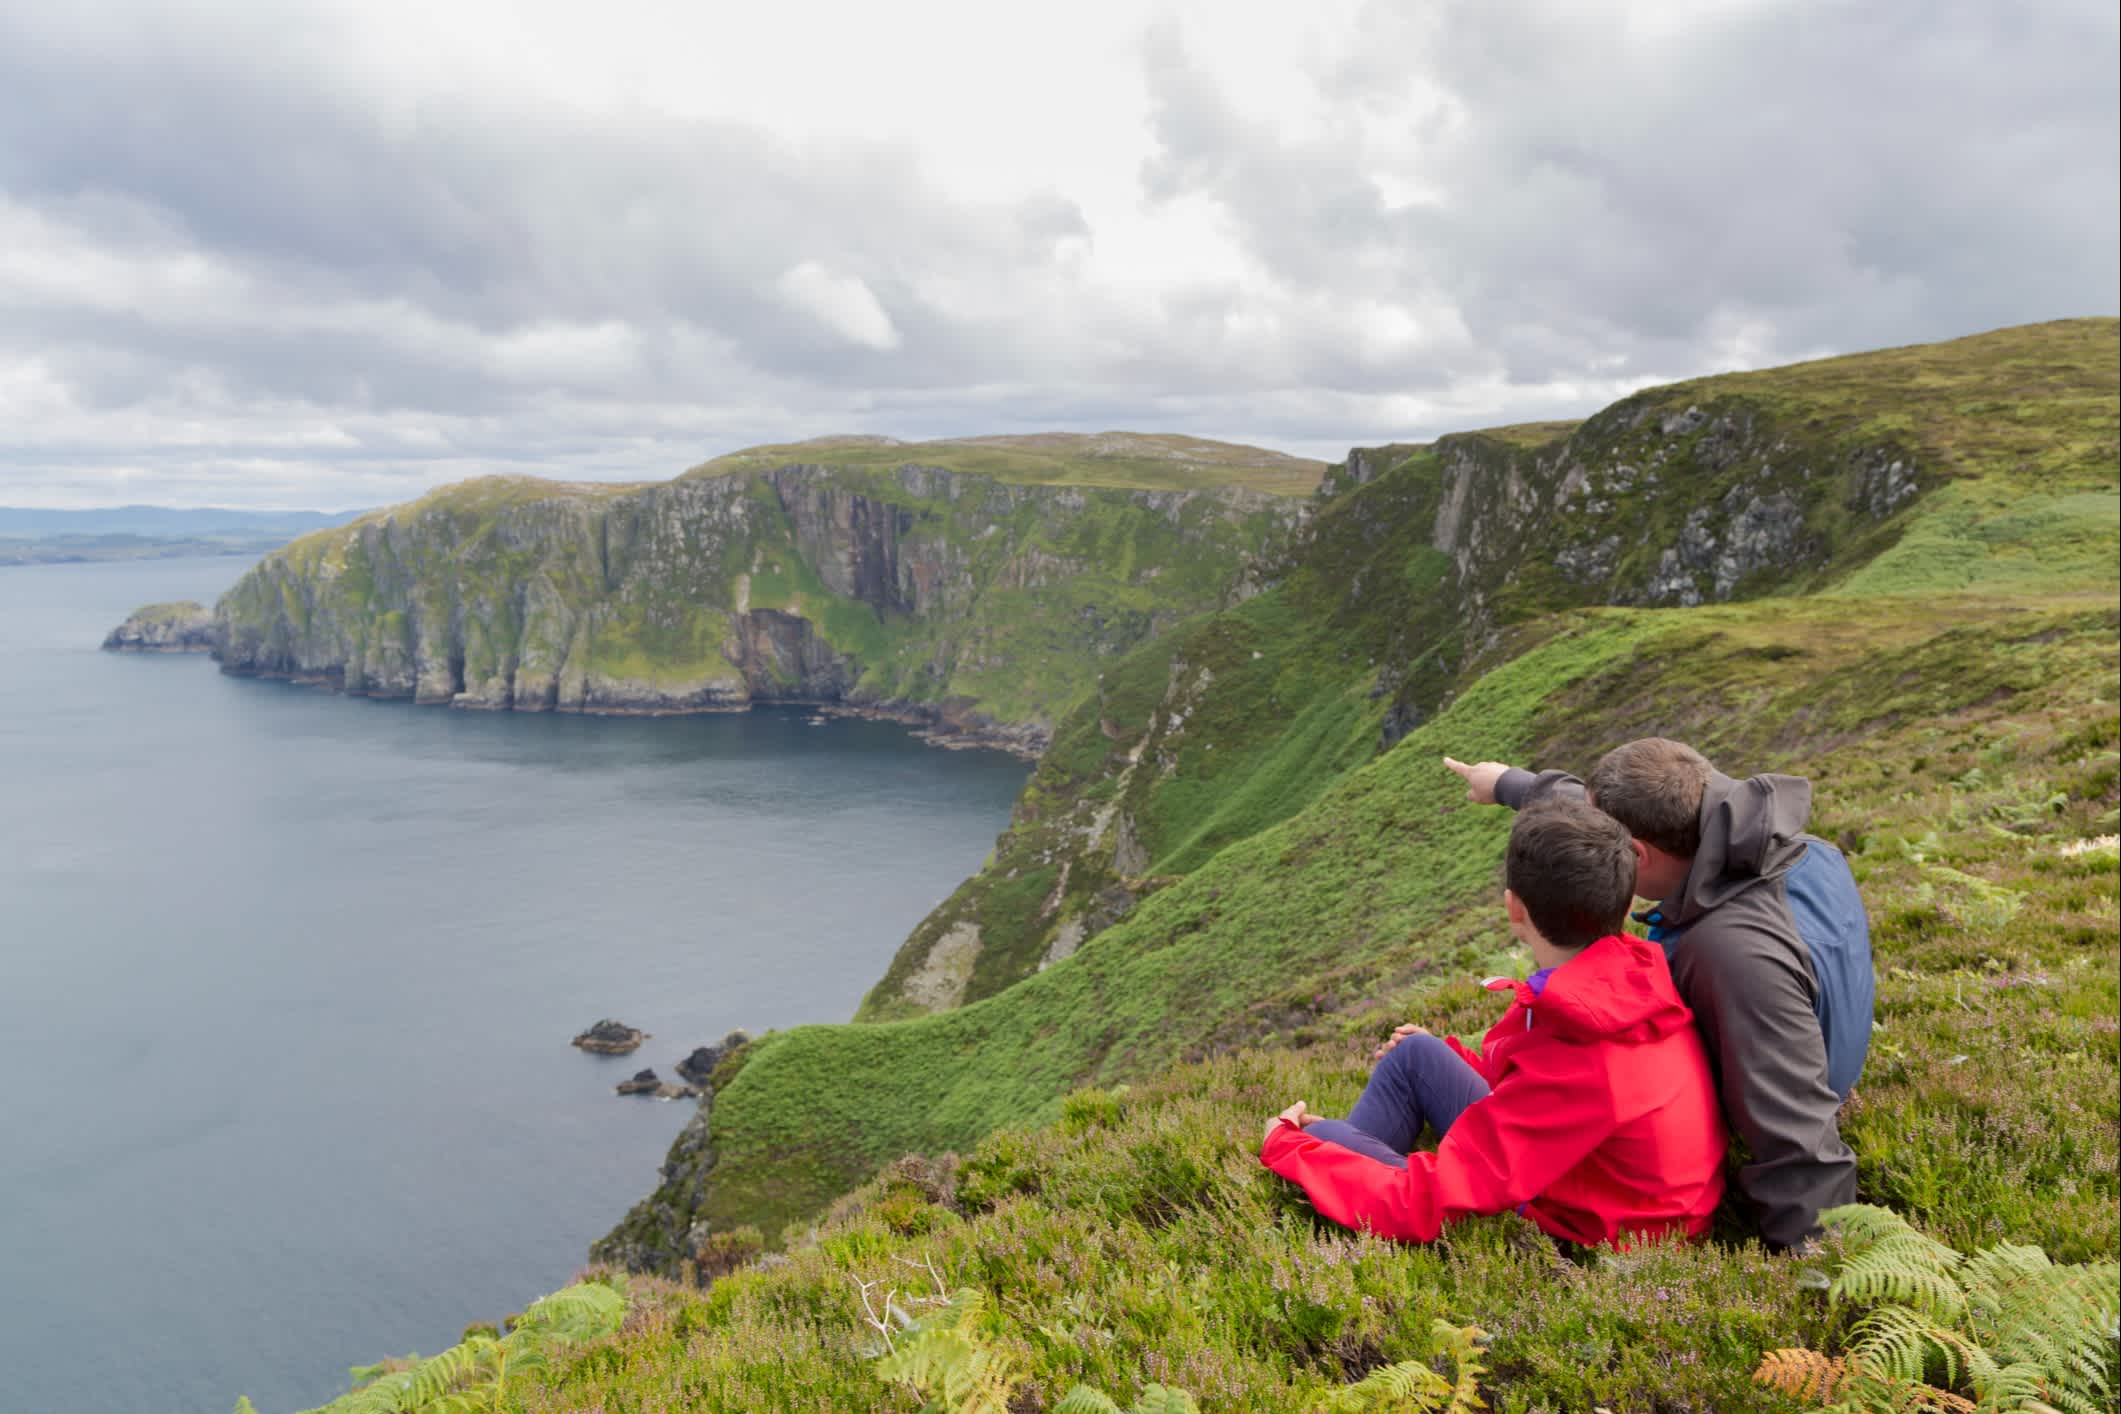 Un père et son fils admirent le paysage de Horn Head en Irlande.
